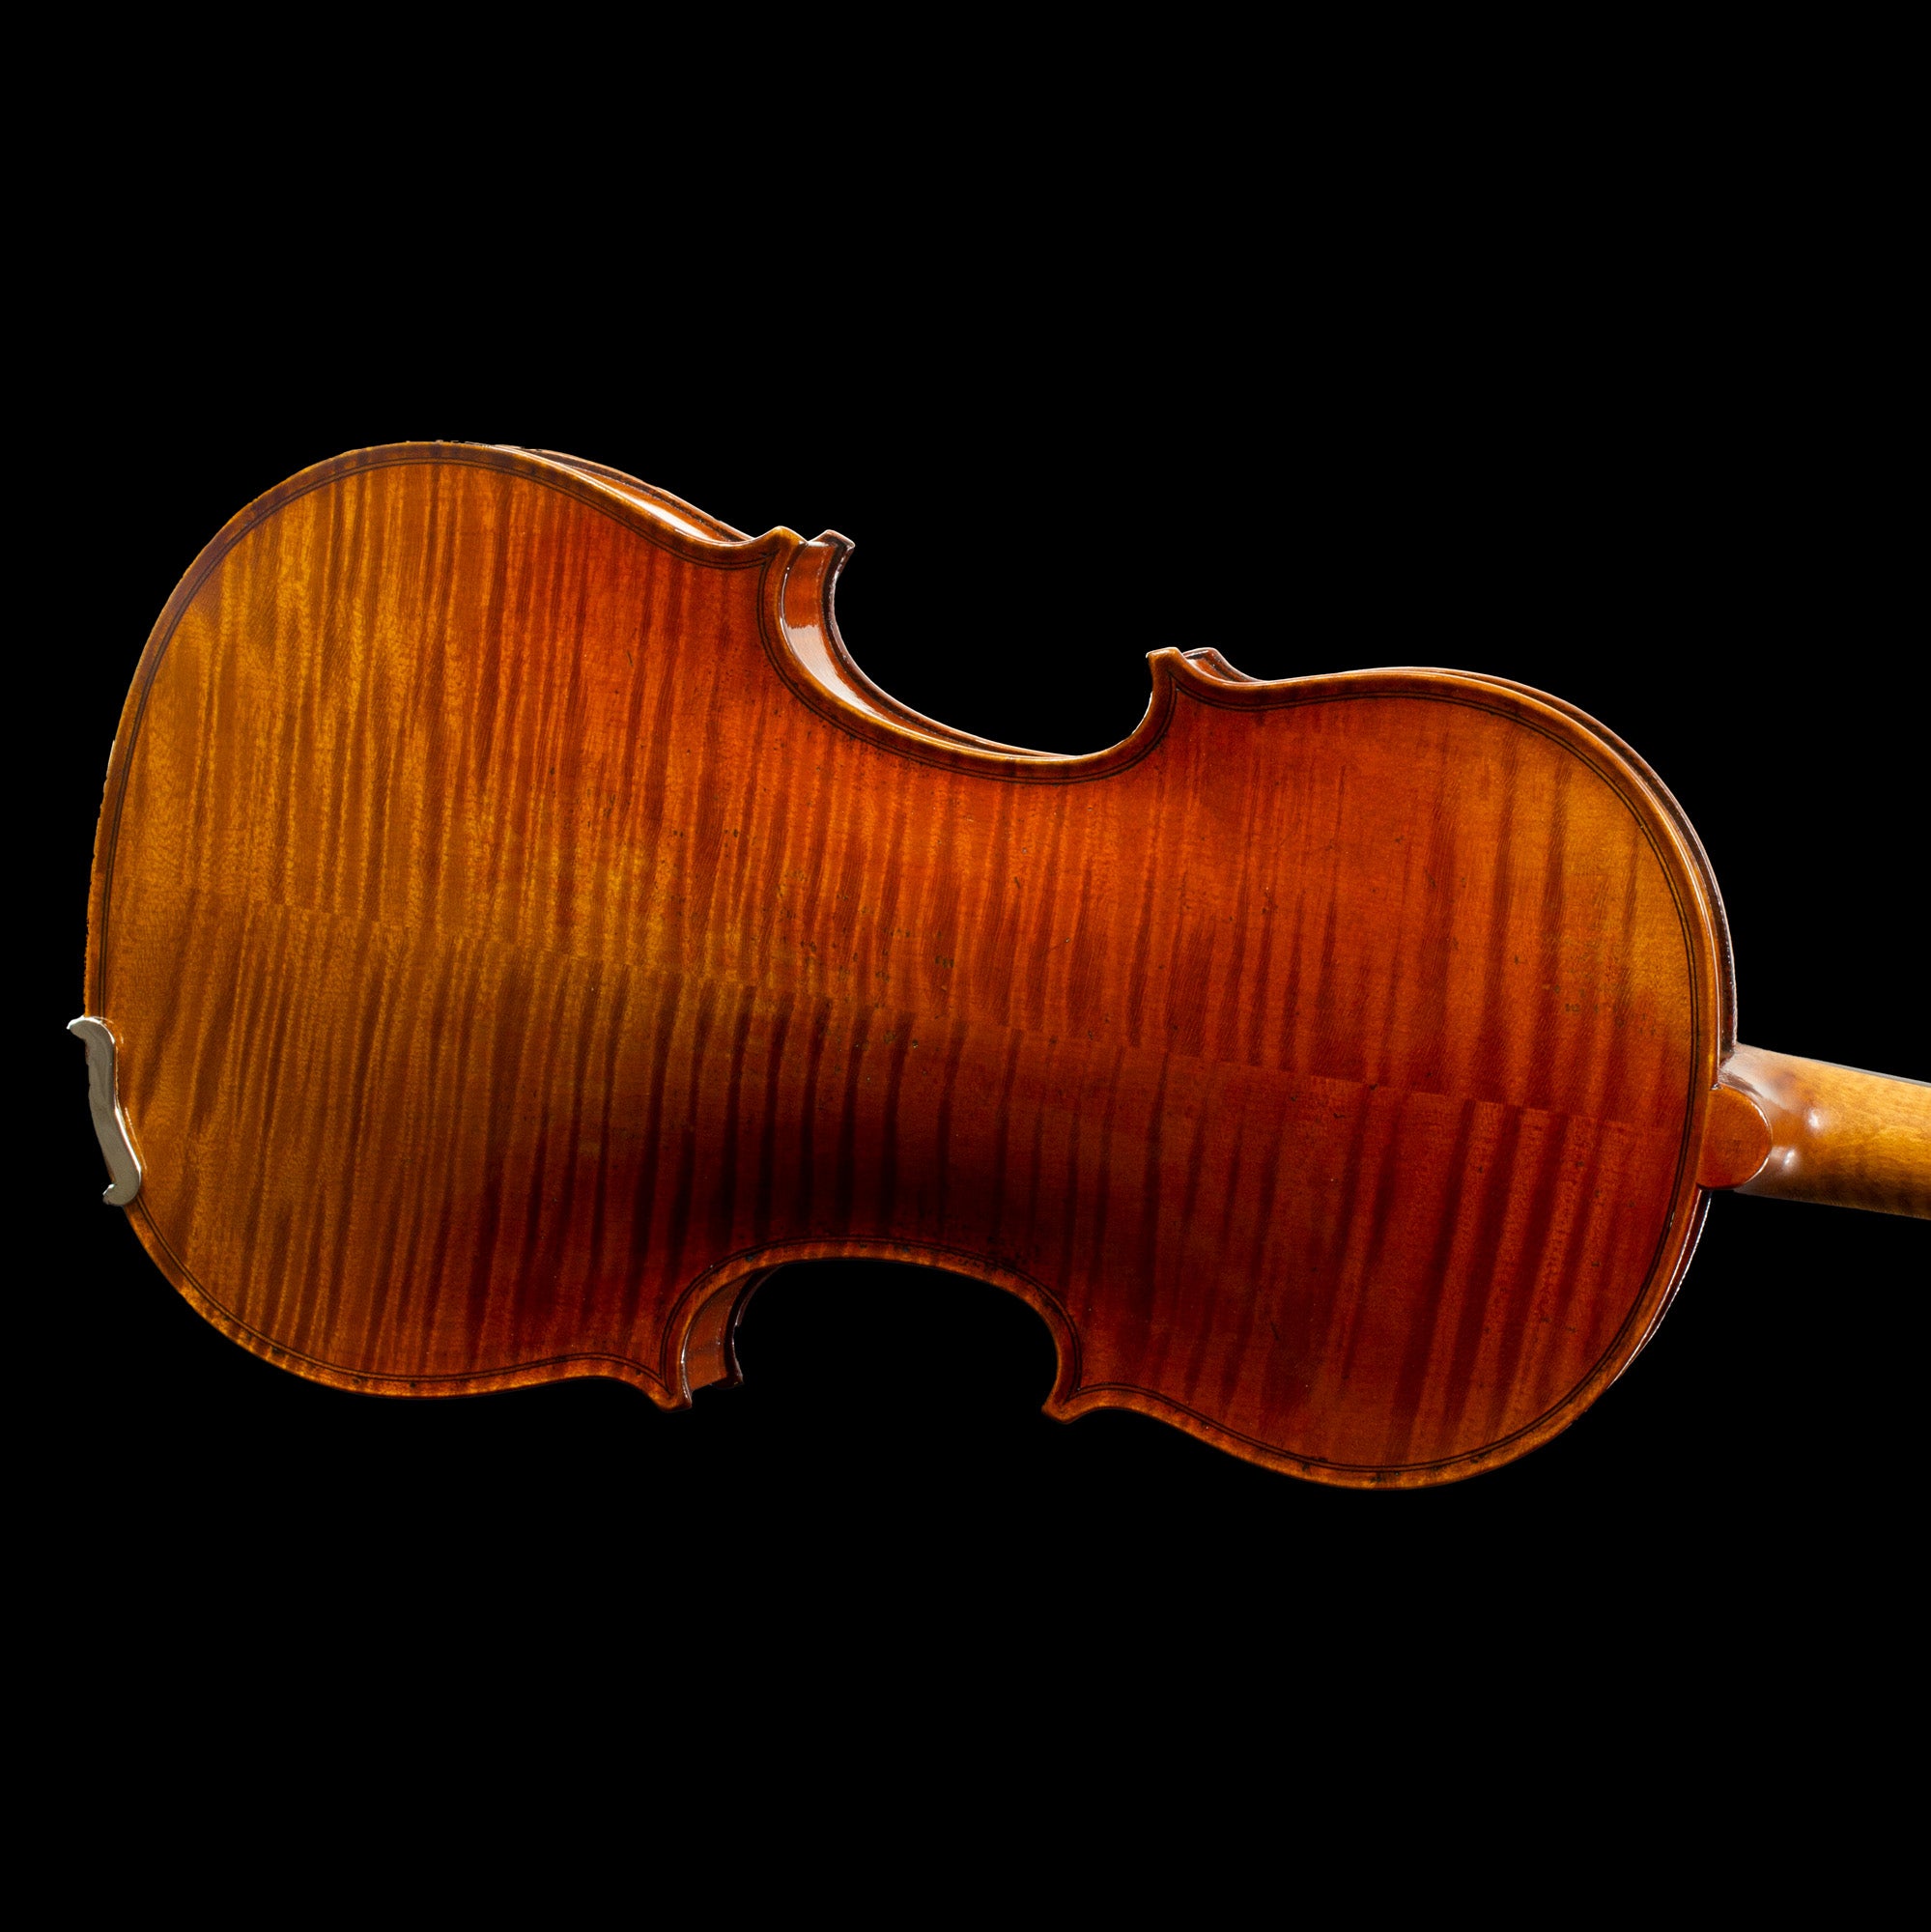 Eastman Archet violon Eastman Pernambuco